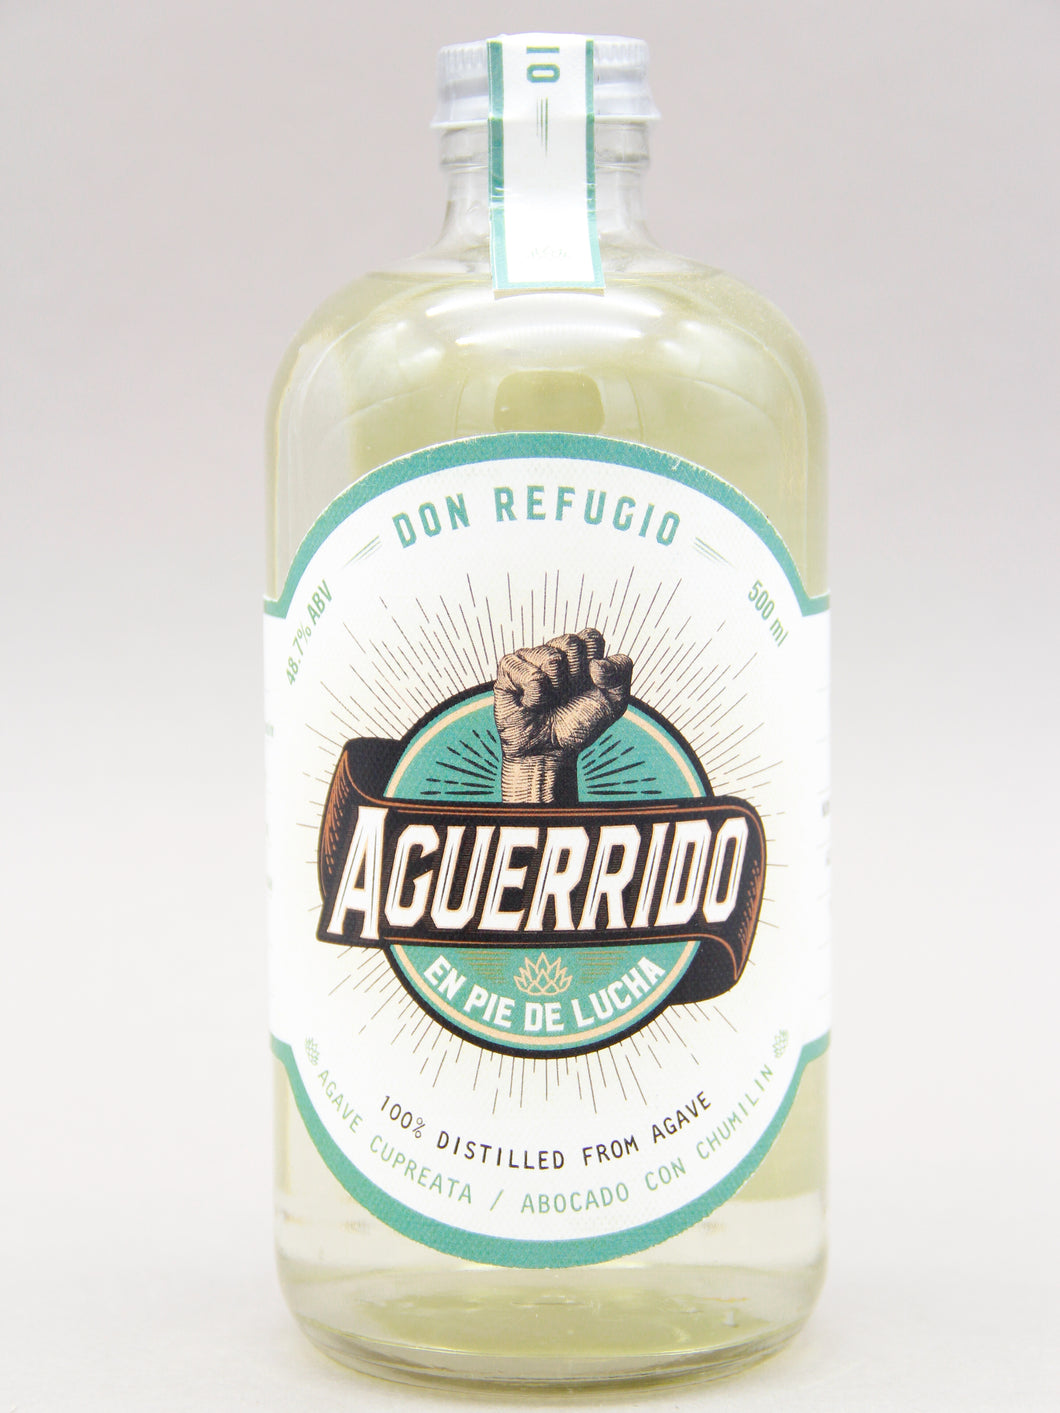 Aguerrido, Don Refugio, 100% Destilado de Agave, Cupreata / Abocado con Chumilin (48.7%, 50cl)